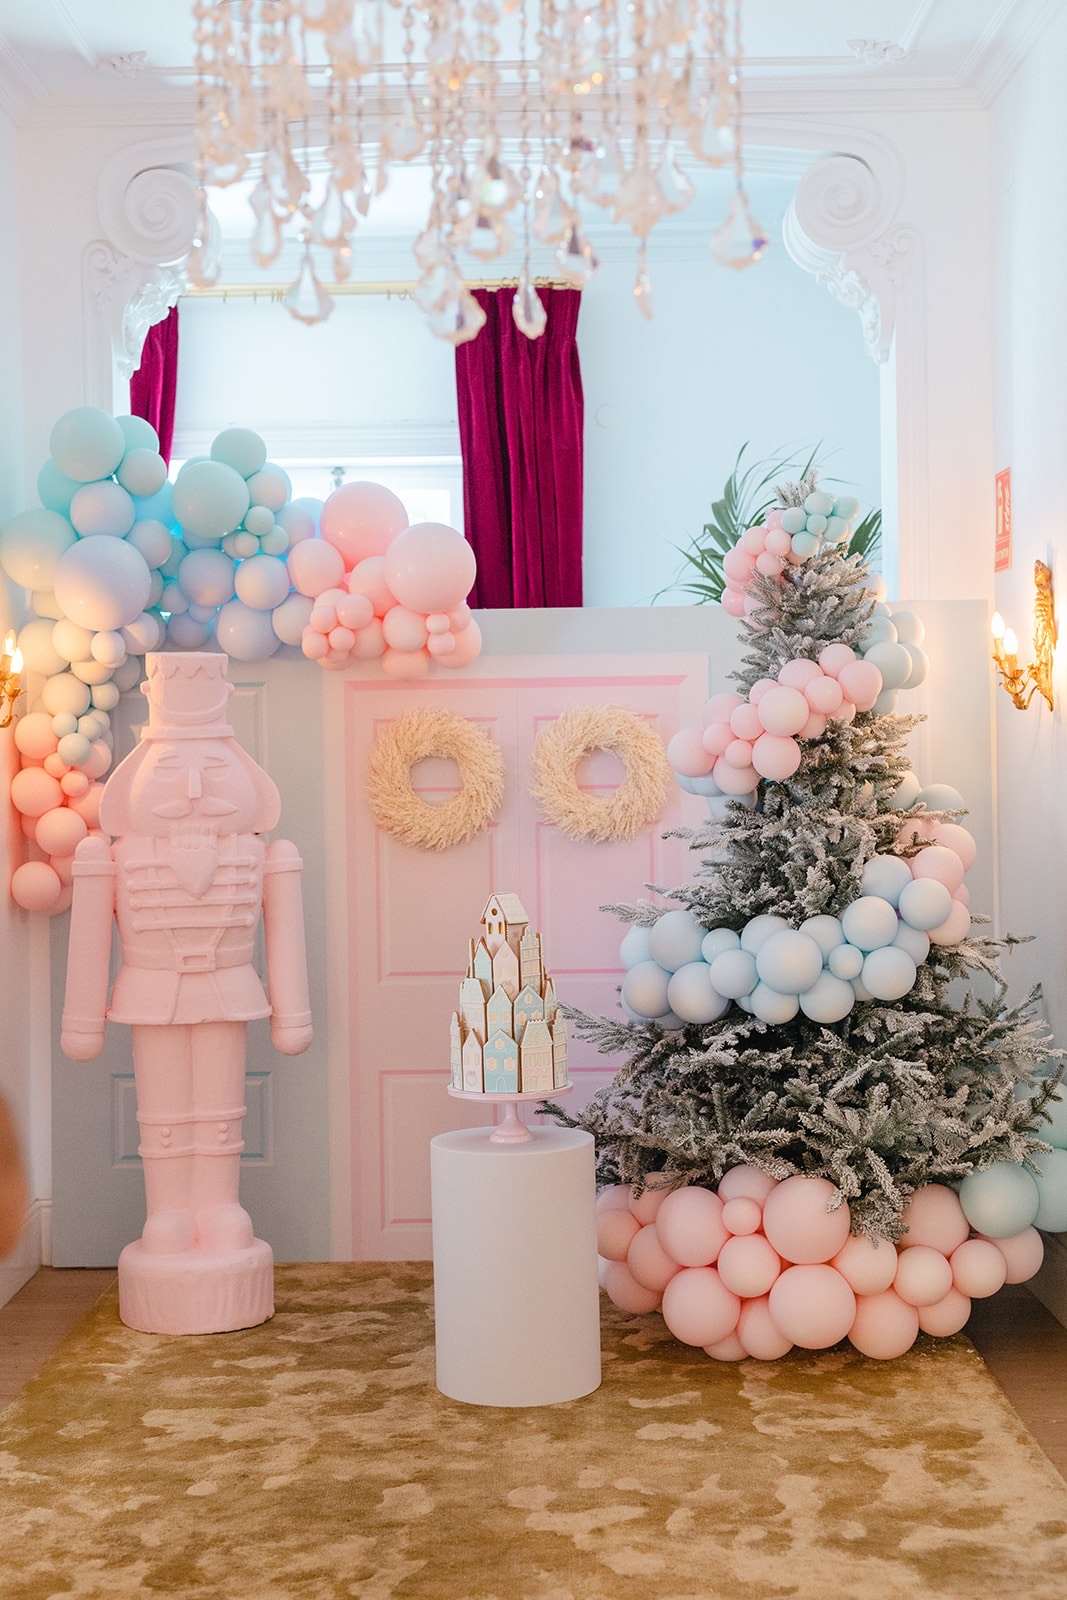 Decoración de Navidad con globos. Árbol de Navidad decorado con globos en tonos pasteles suaves rosas y celestes.